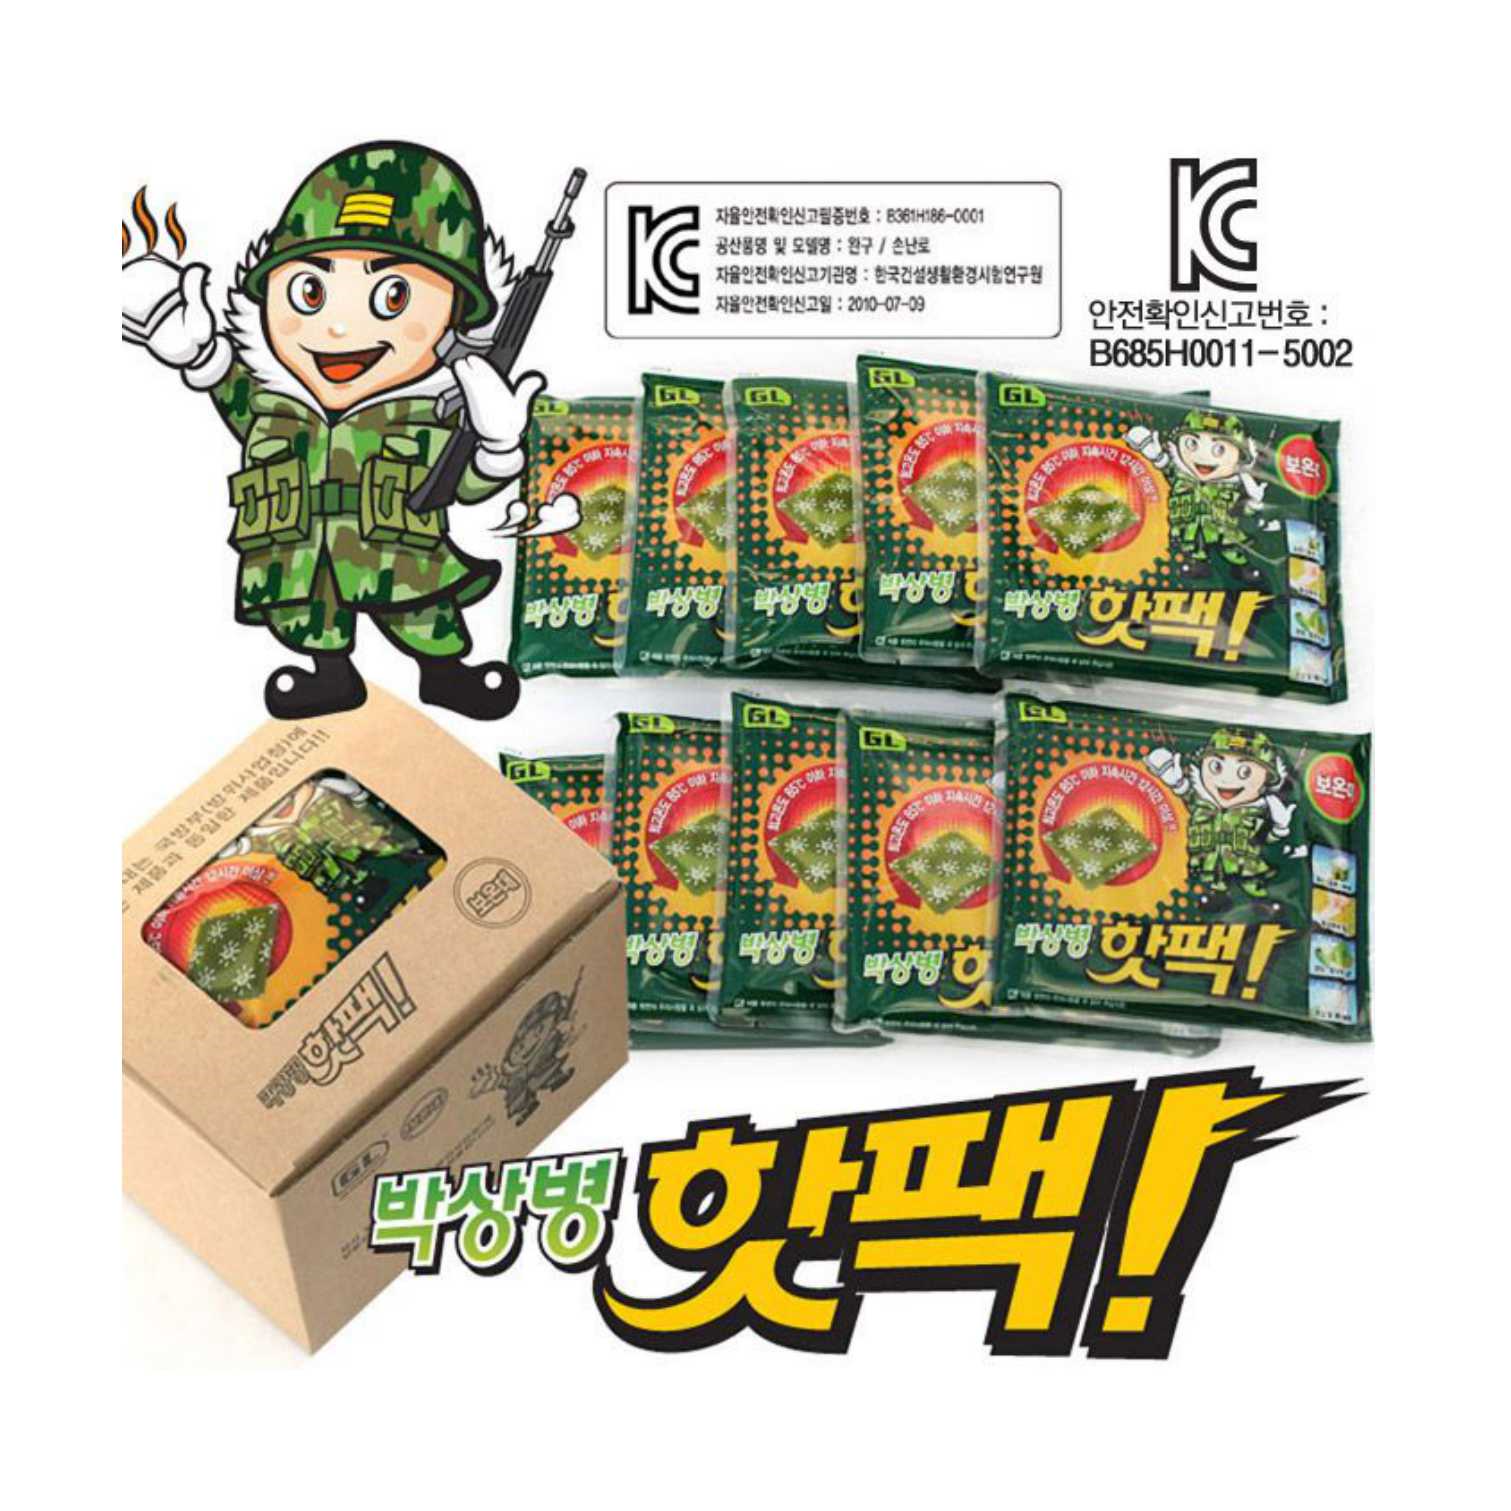 《多多家》韓國正品 韓國 GL軍人暖暖包 超強可熱兩天 暖暖包